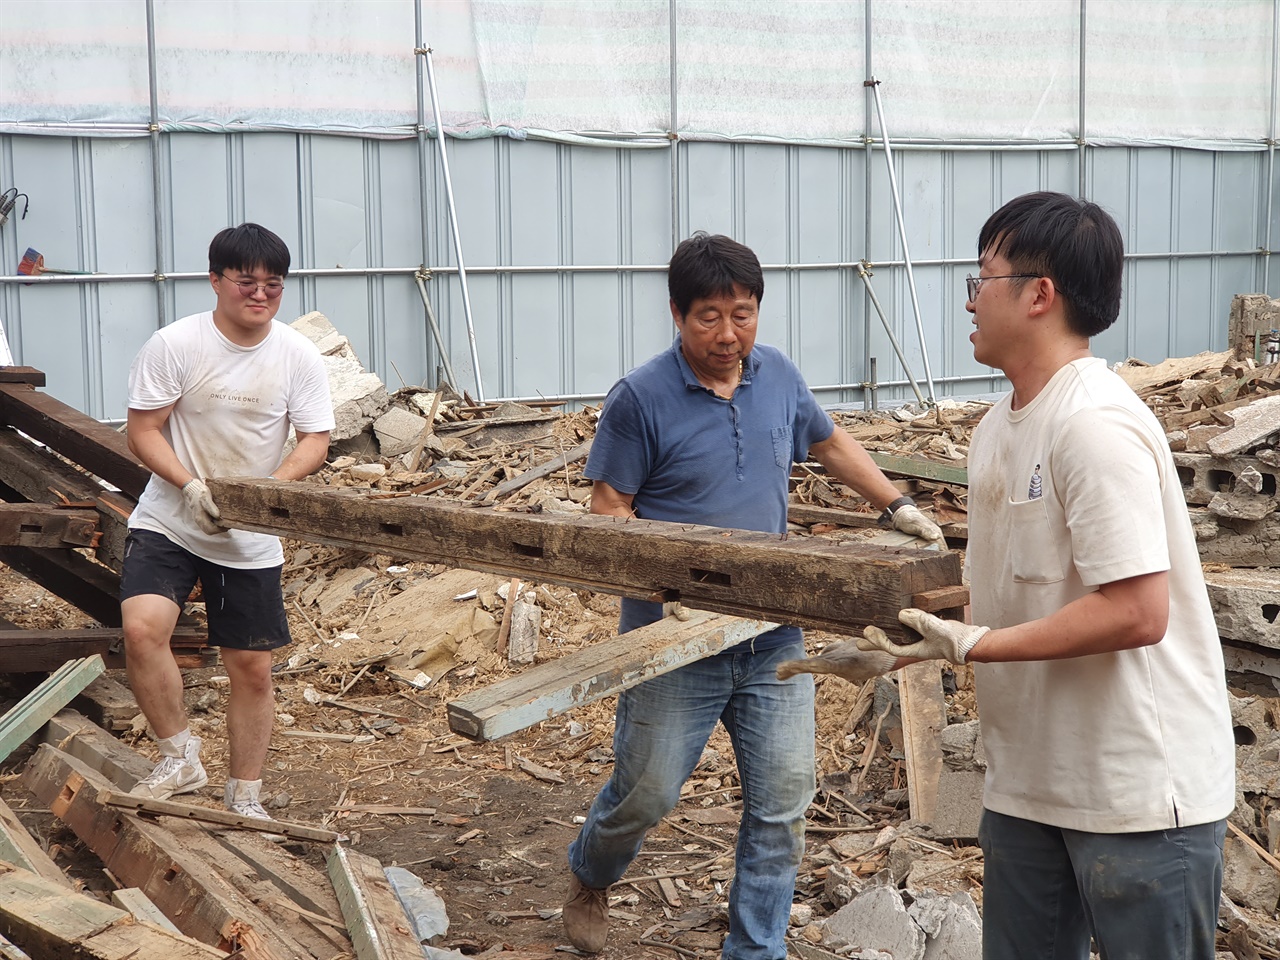 청양군에서 청년 커뮤니티 공간 조성 프로젝트를 진행 중인 김만이 대표(맨 오른쪽).  